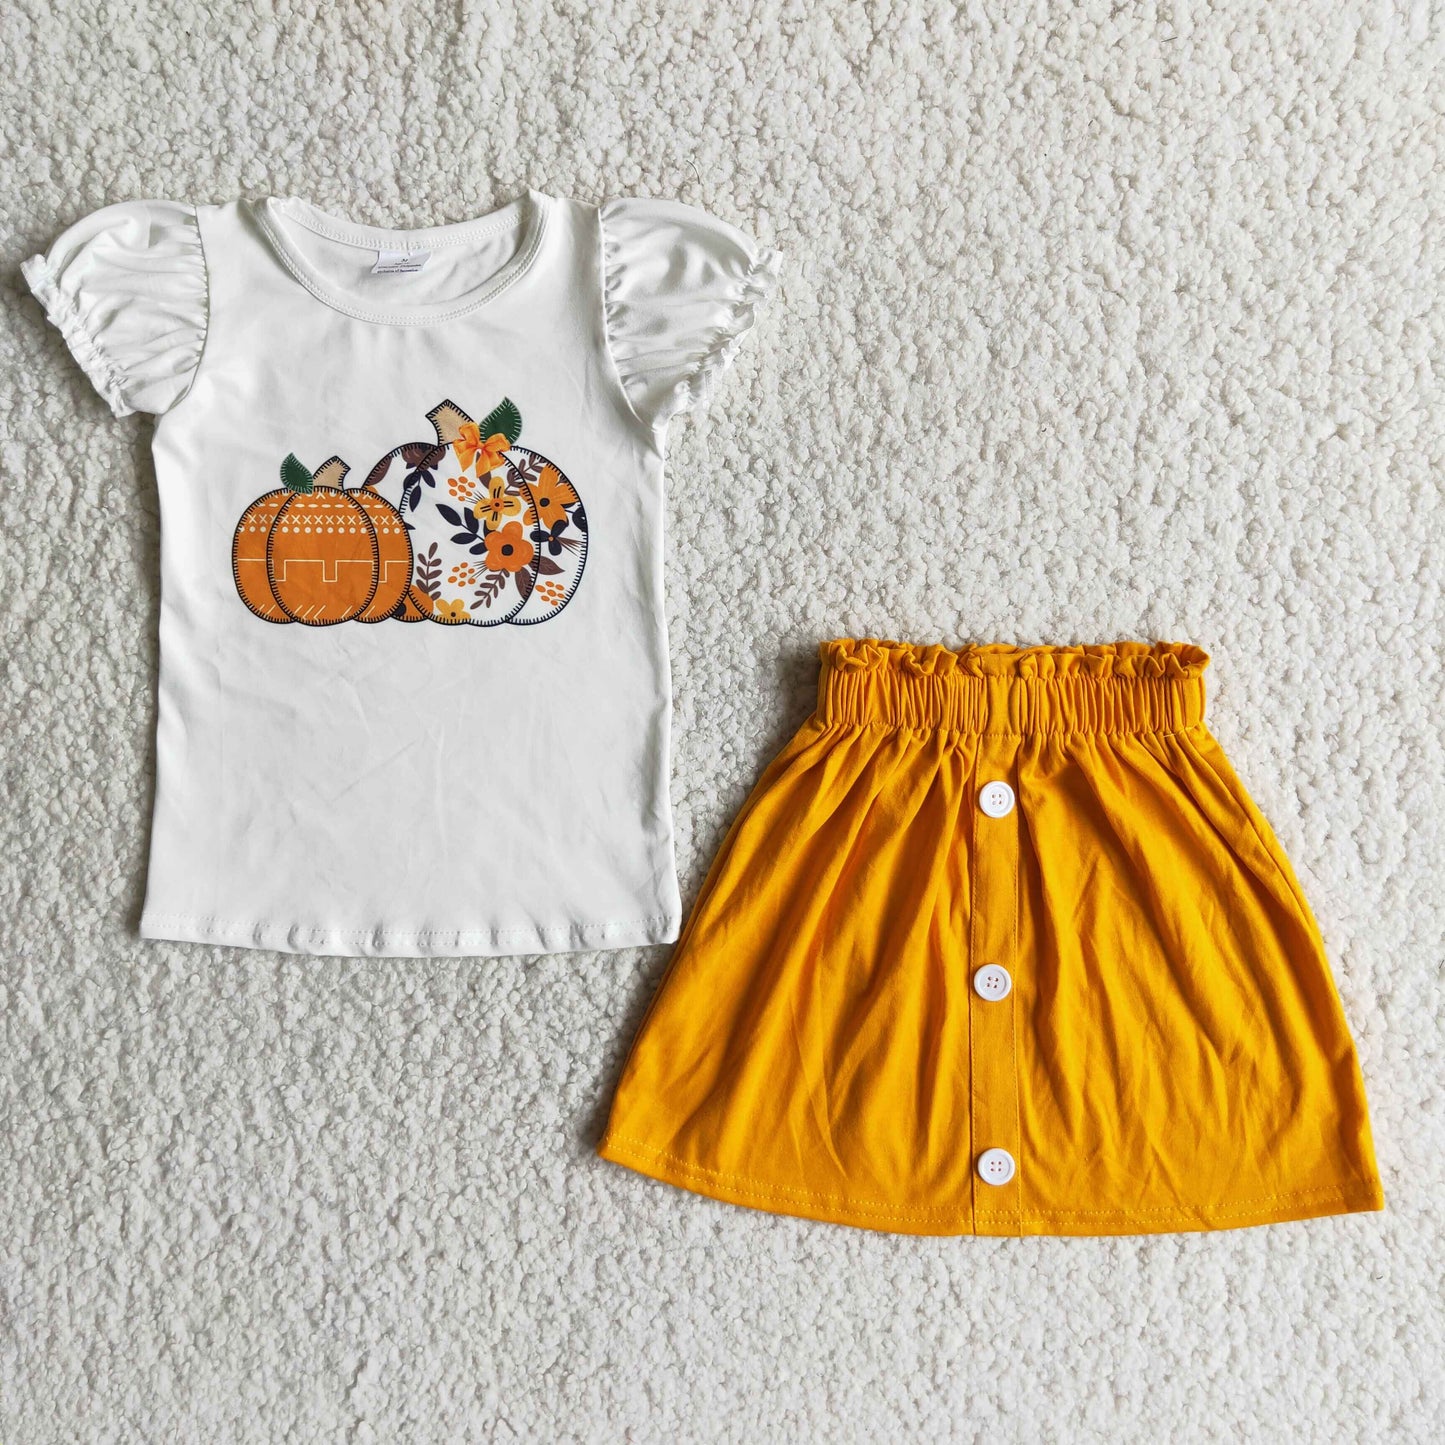 Pumpkin skirt outfit